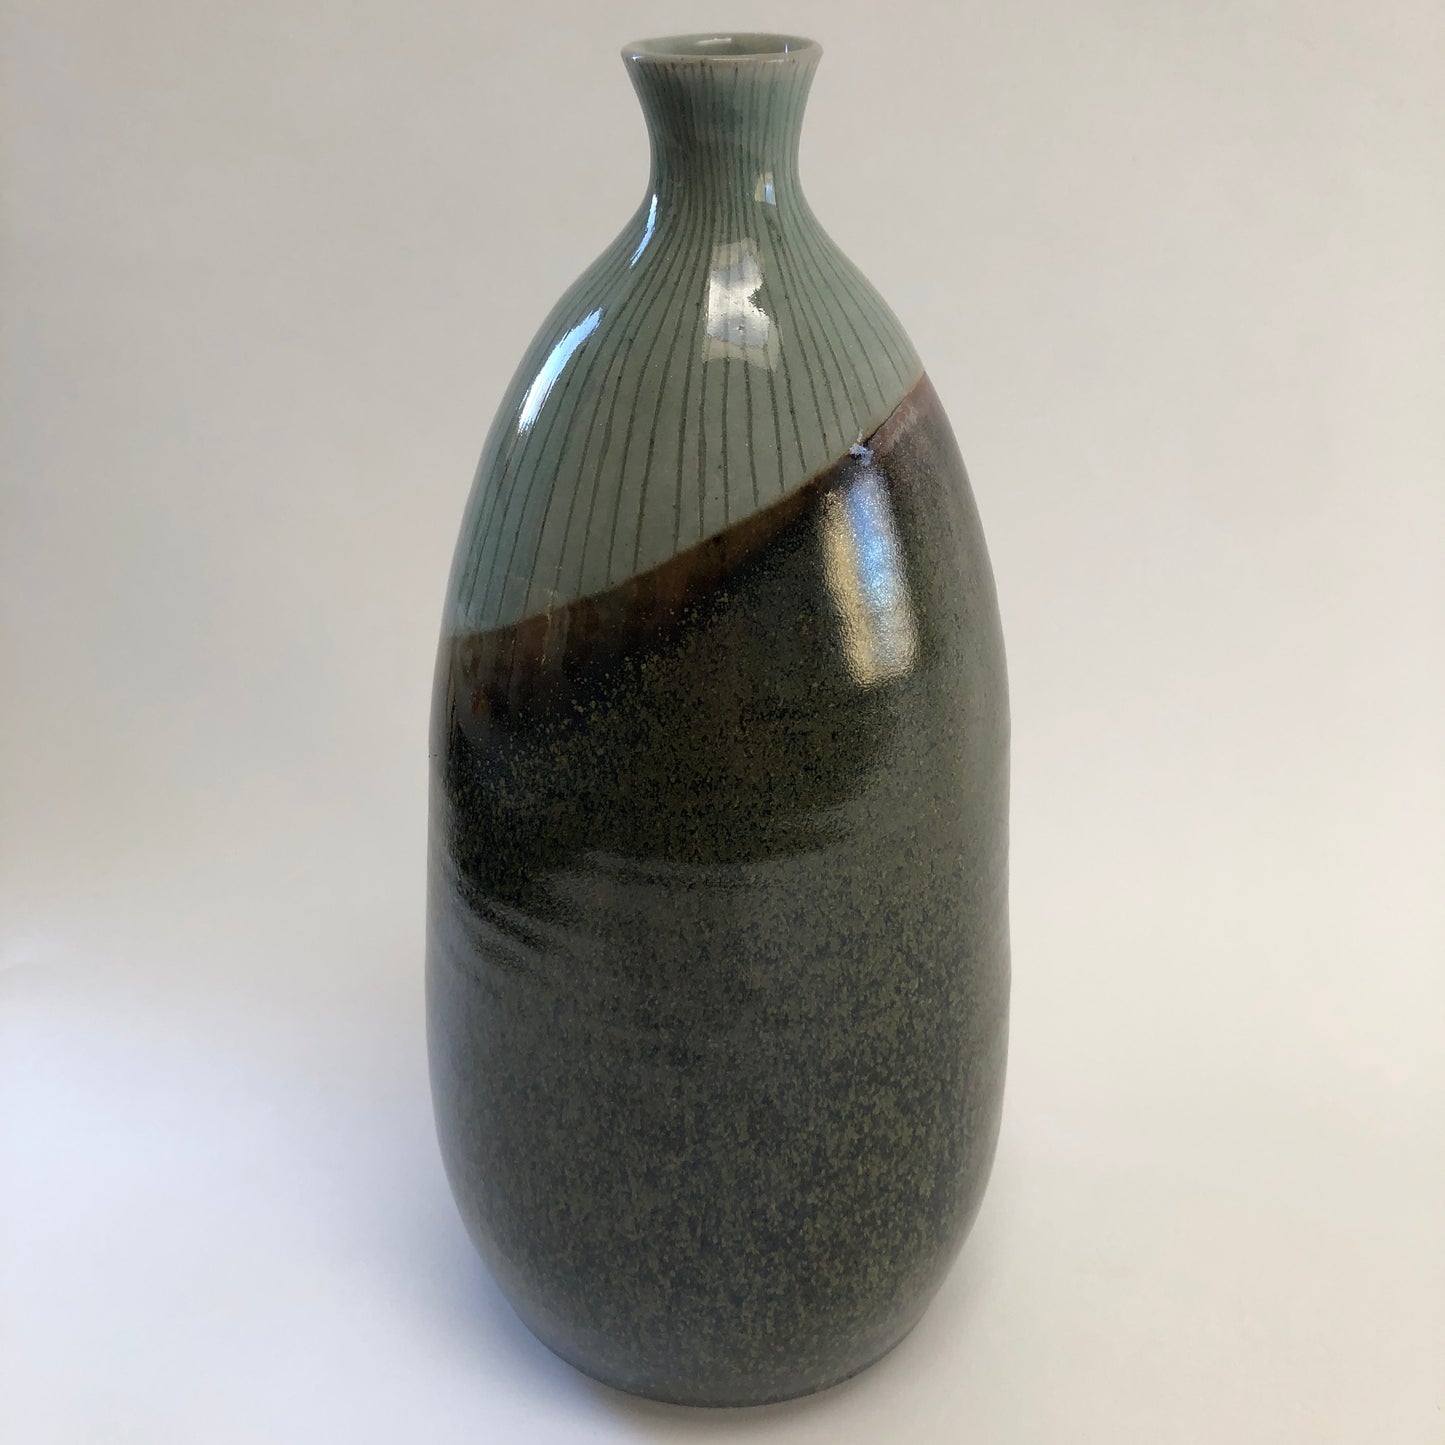 Bottle Shaped Vase